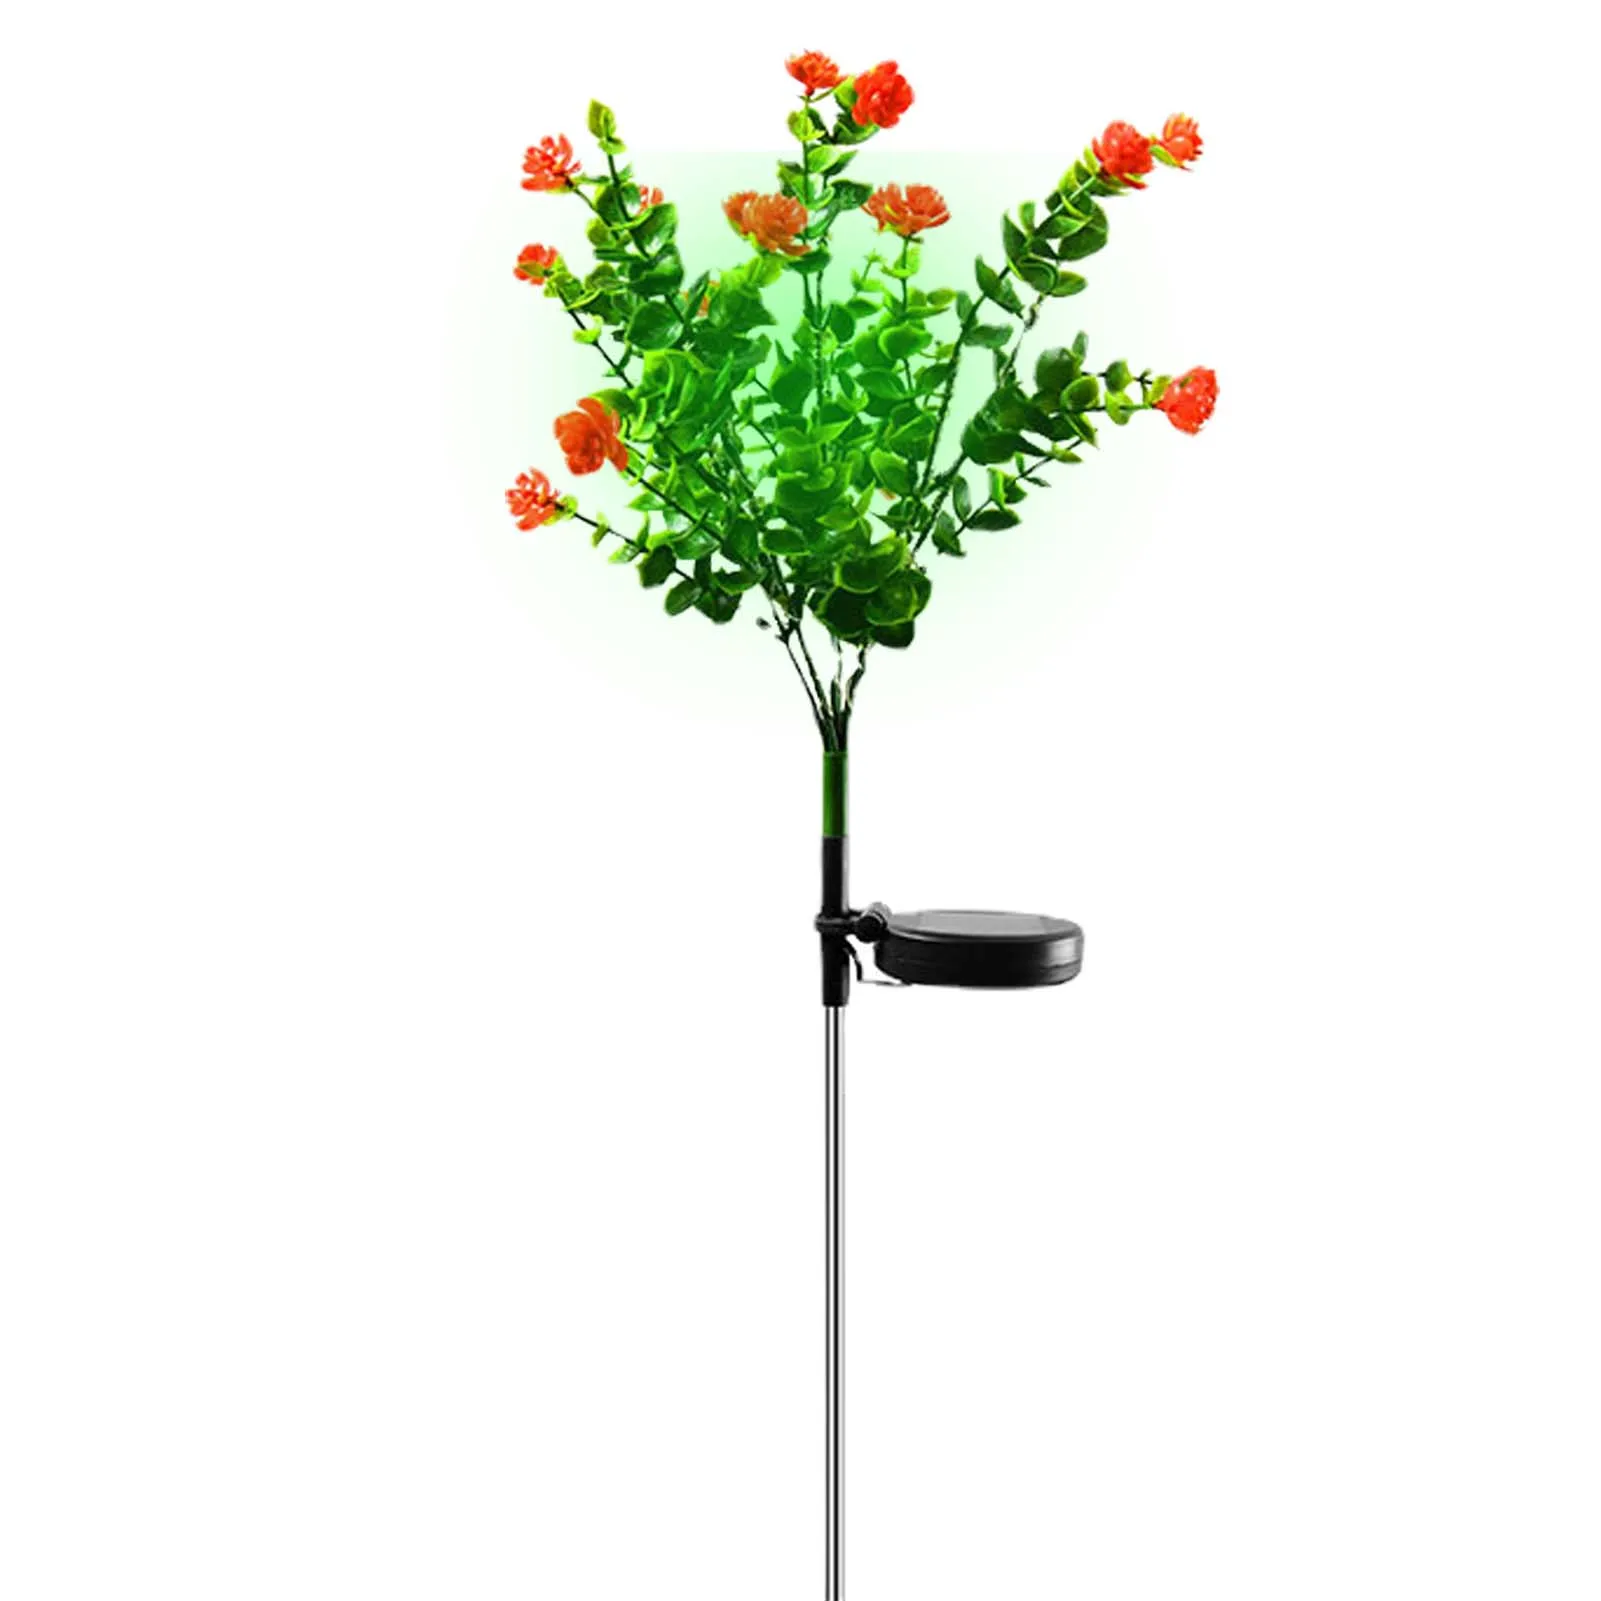 

Садовый Солнечный светильник s IP65, водонепроницаемый Светодиодный светильник Camellias, ландшафтный светильник, создает романтическую атмосфе...